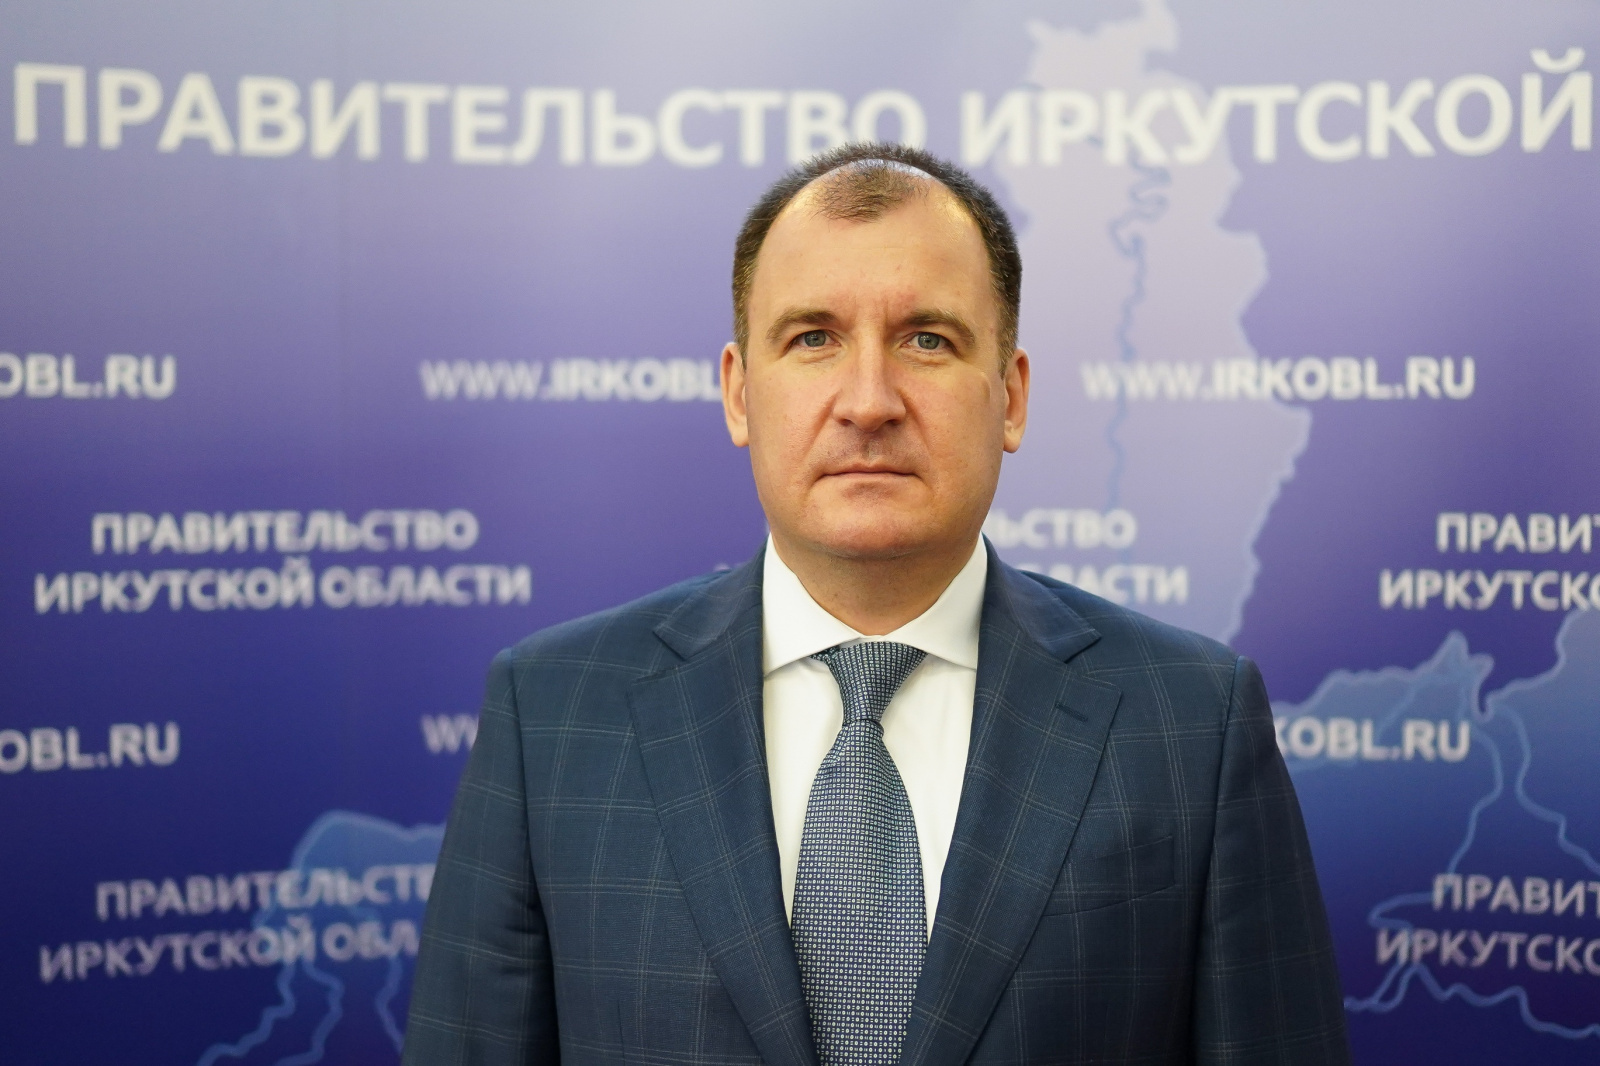 Владимир Читоркин стал заместителем председателя правительства Иркутской области